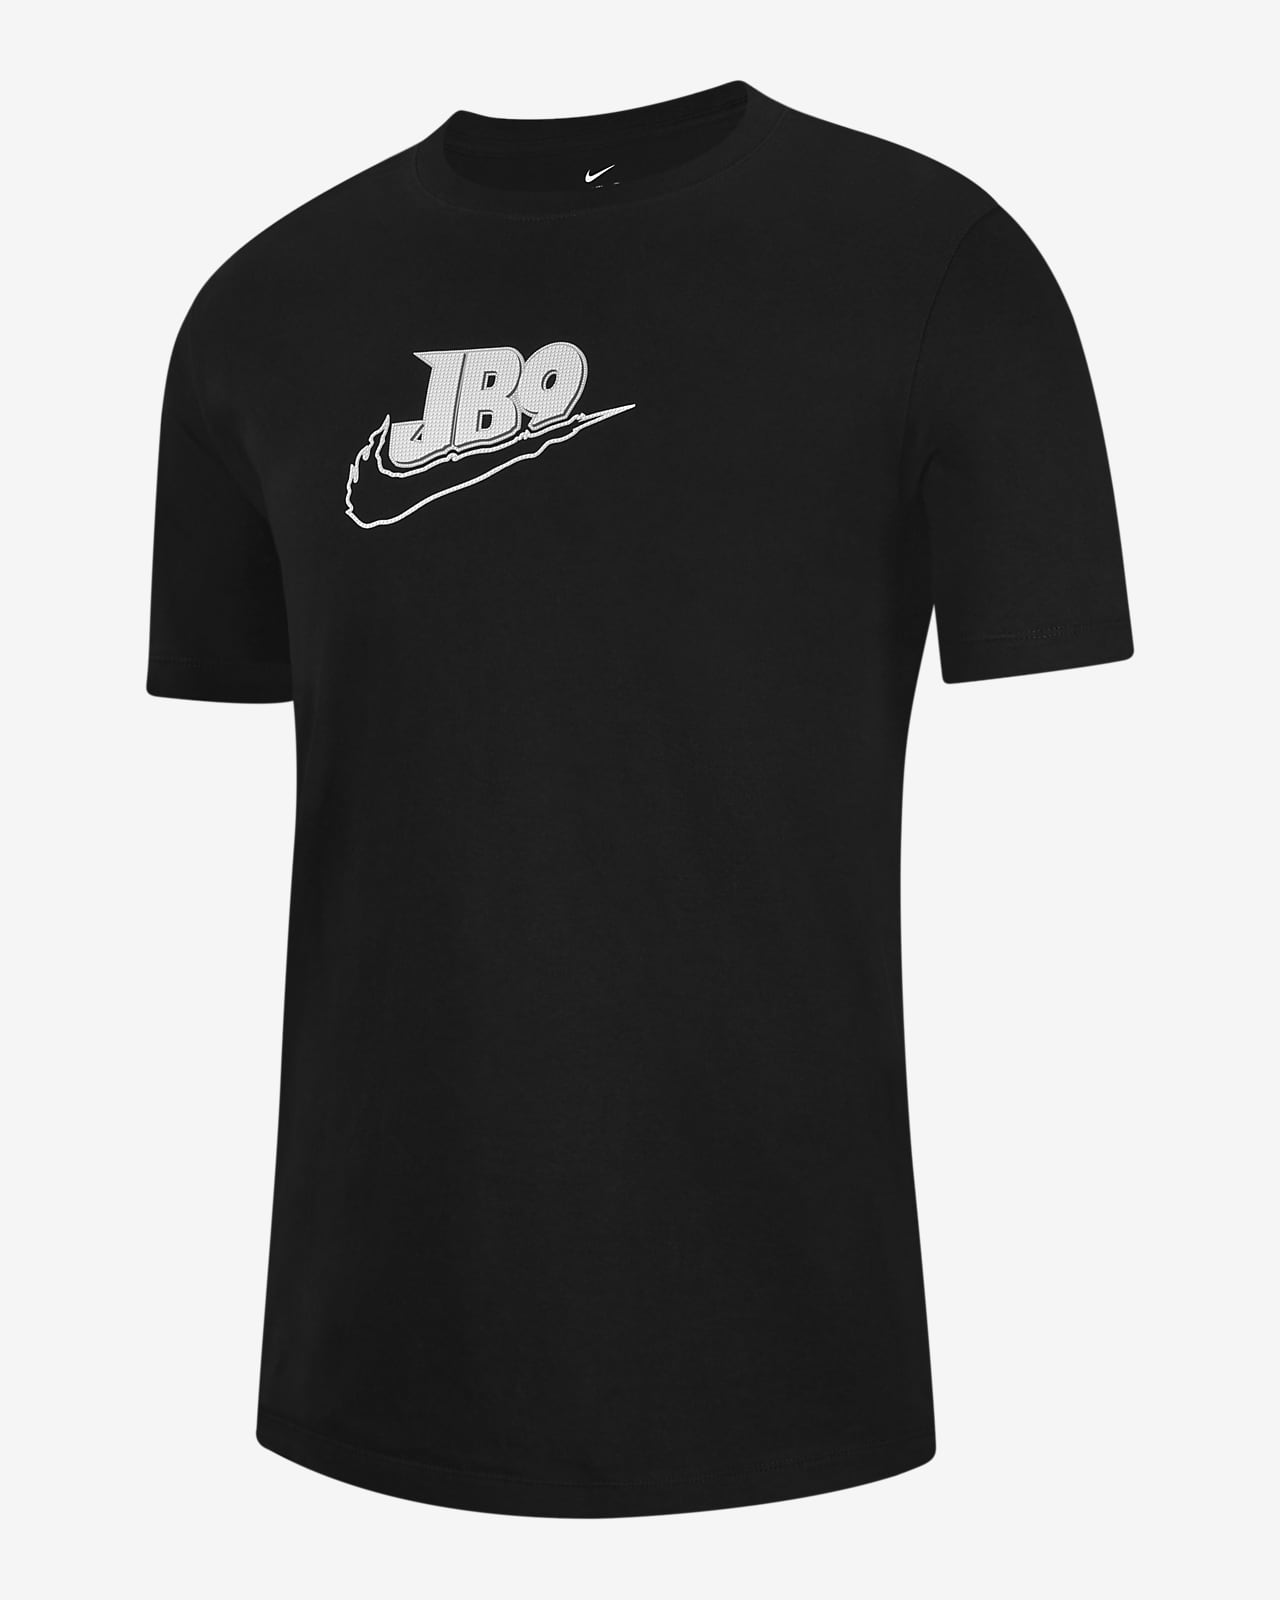 Joe Burrow Men's T-Shirt.